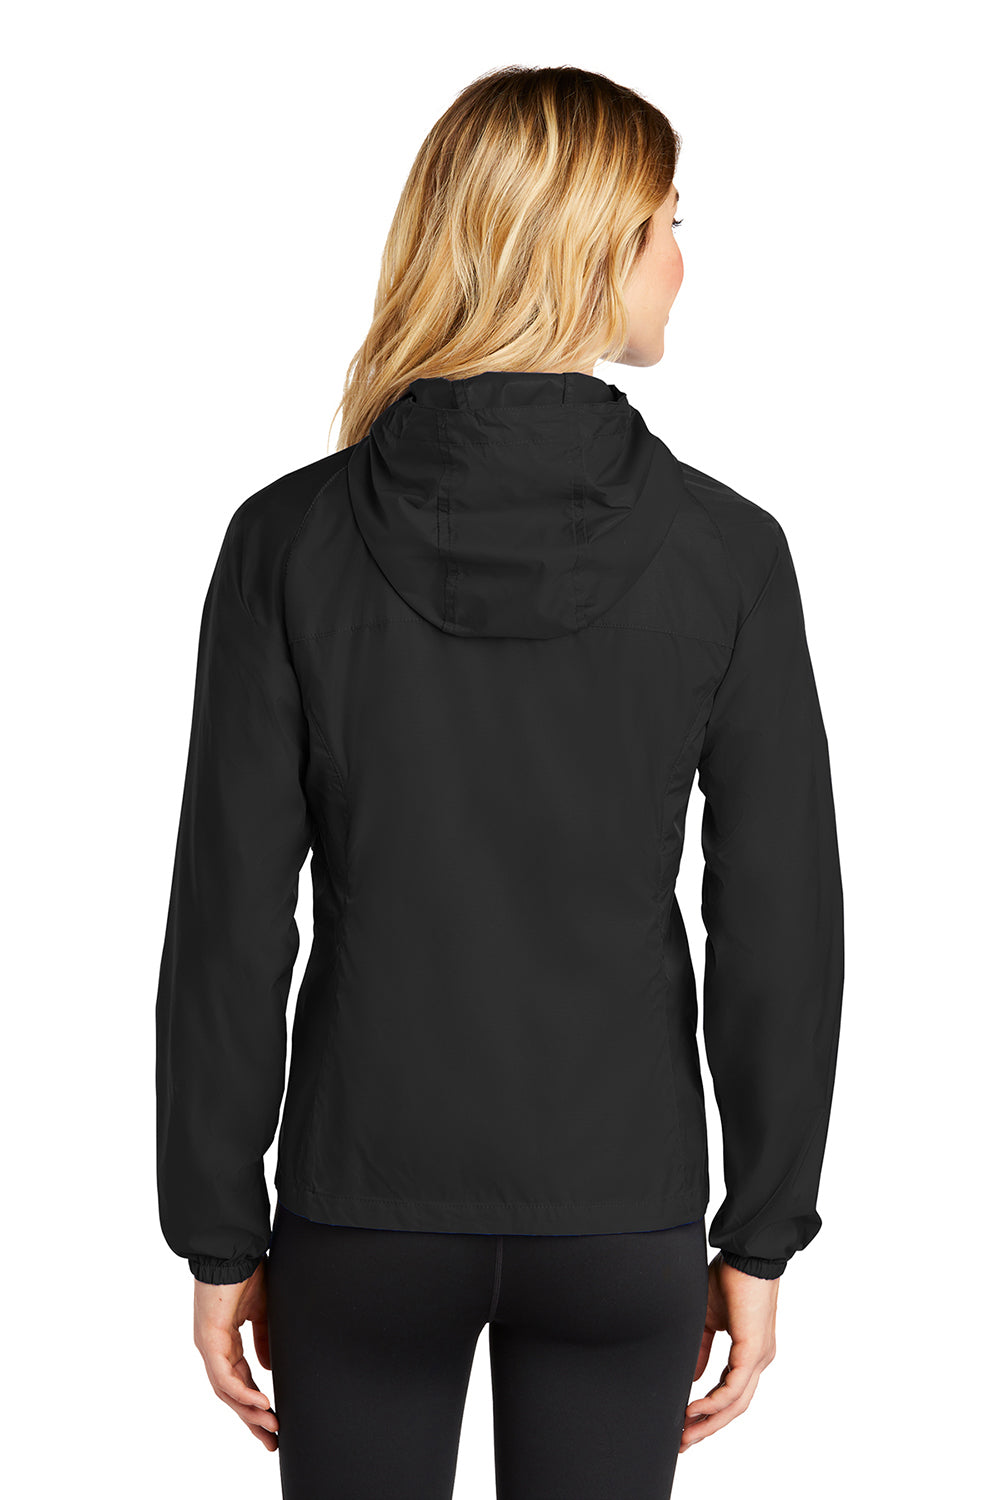 Eddie Bauer EB501 Womens Packable Wind Resistant Full Zip Hooded Jacket Black Model Back